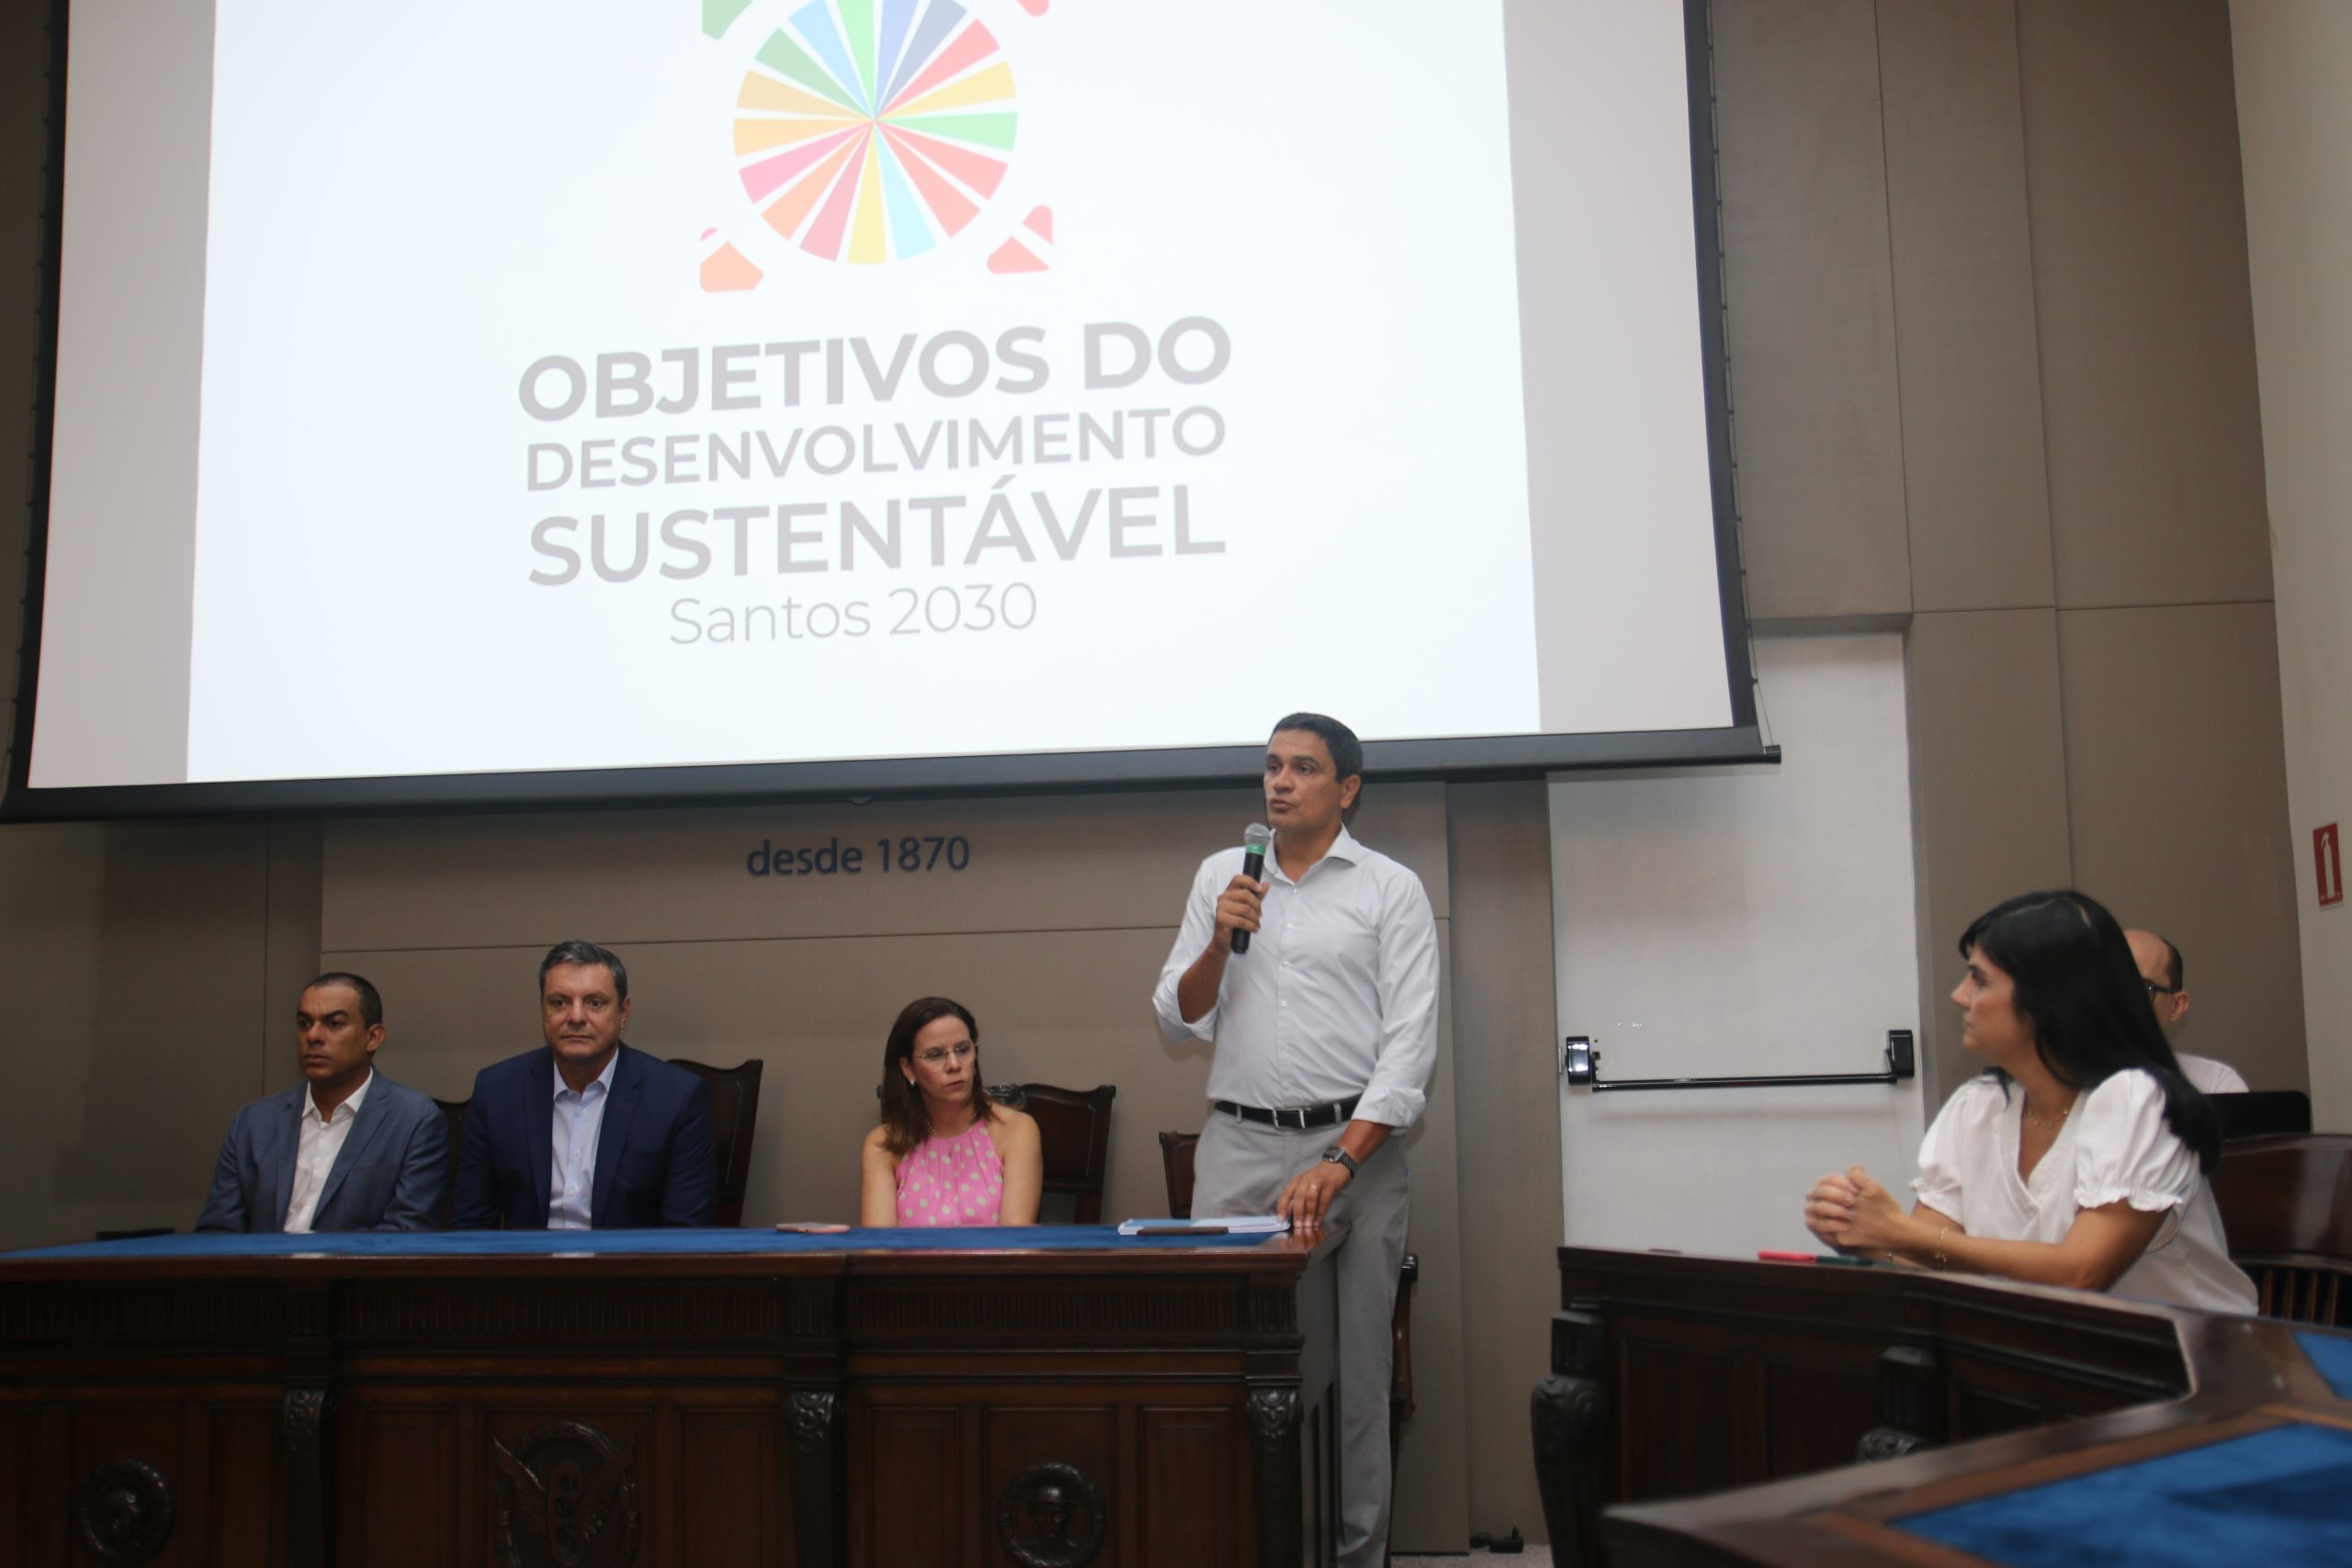 Agenda 2030: Santos lança projeto para Desenvolvimento Sustentável no auditório da ACS